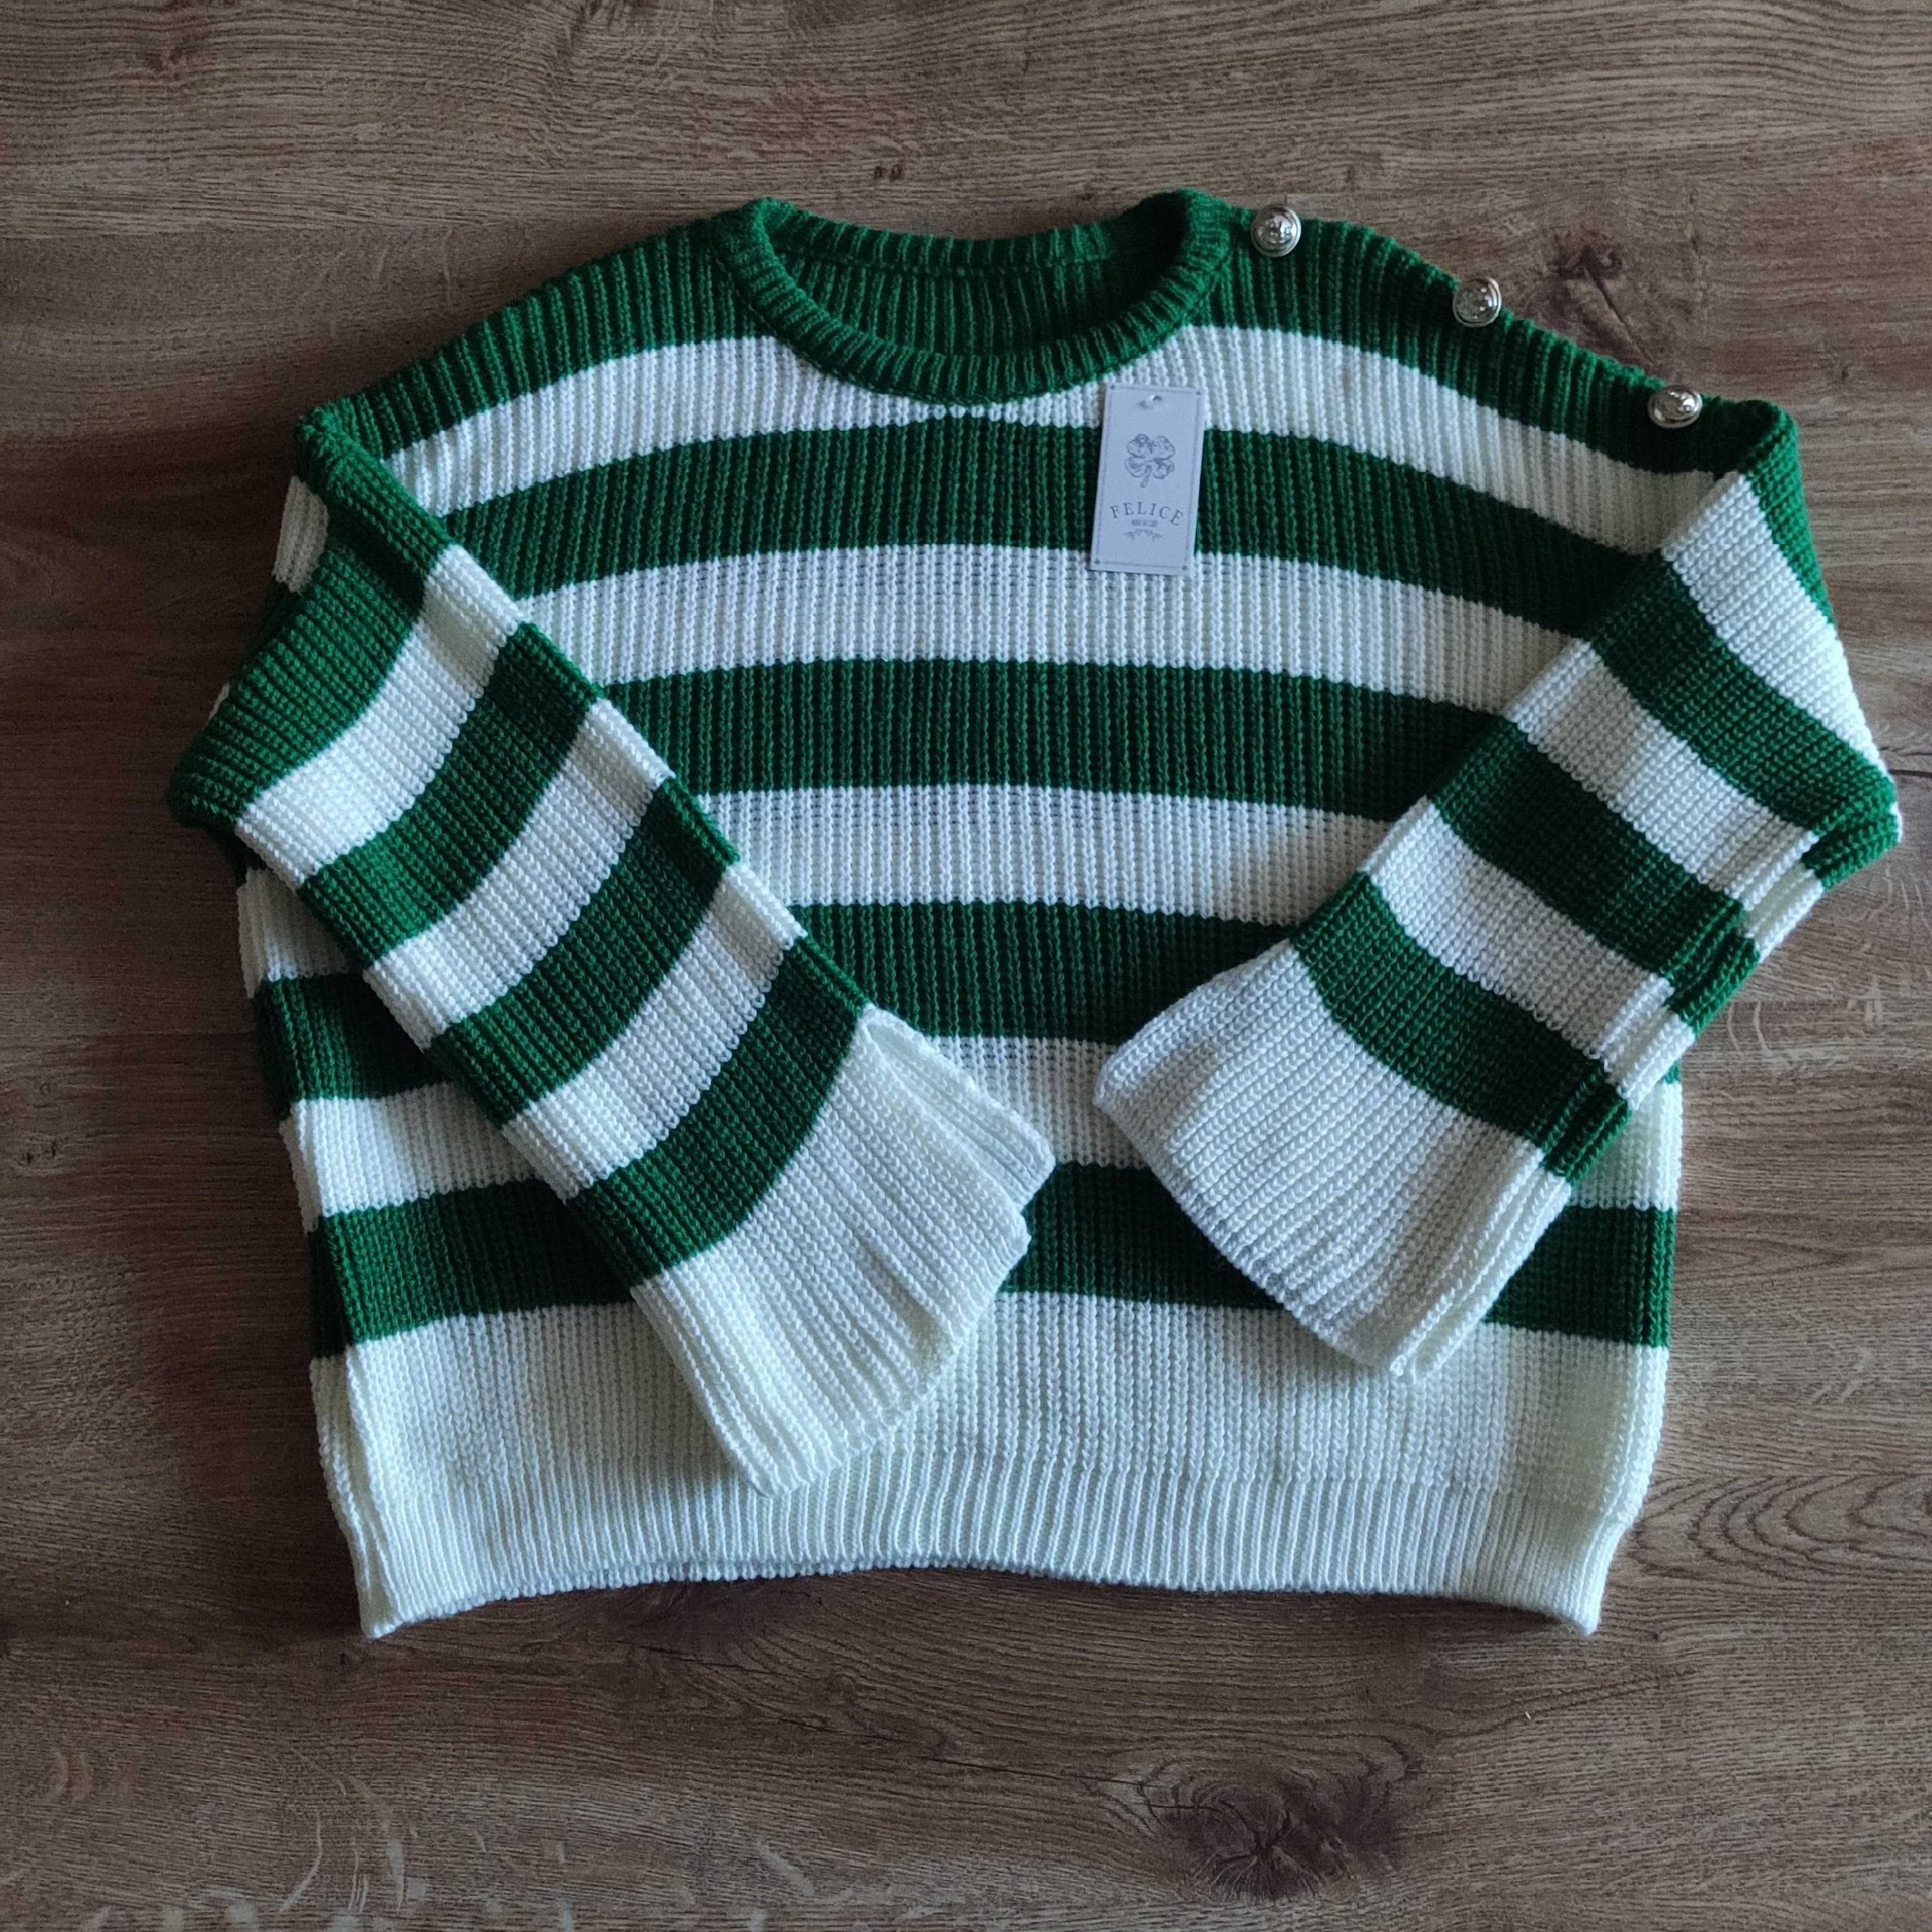 sprzedam nowy sweter w pasy zielono białe Felice 46